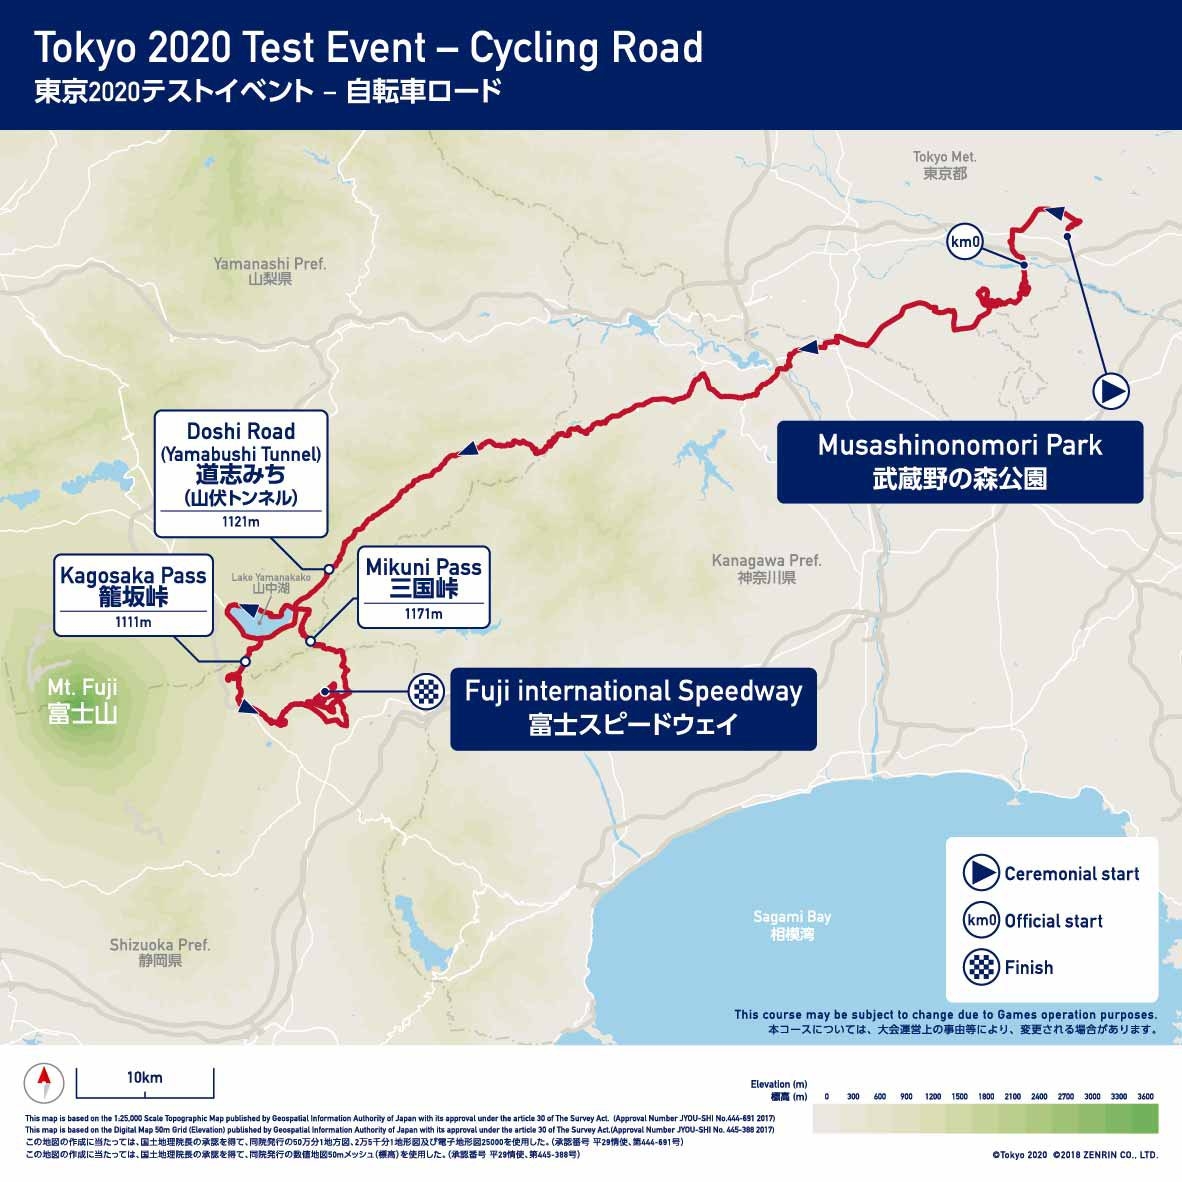 ロードのプレイベントは、武蔵野の森公園から途中ショートカットして富士スピードウェイを目指す距離179km、獲得標高3700m